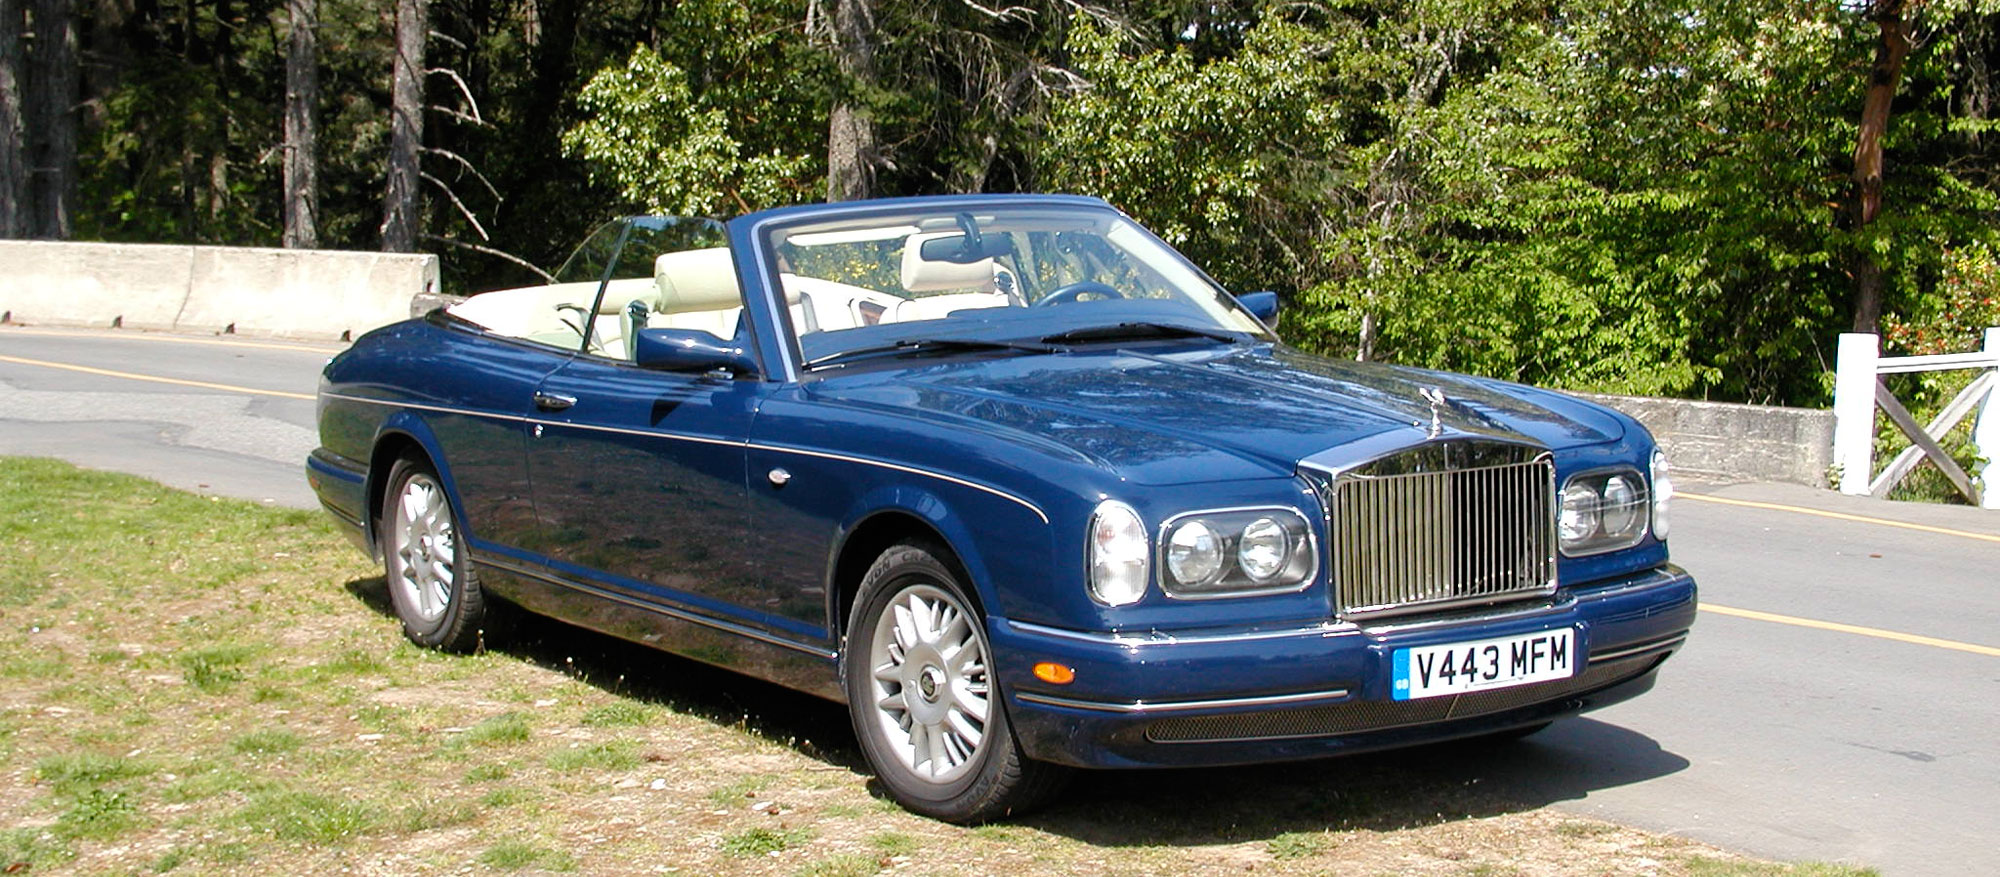 Rolls Royce Owners Club